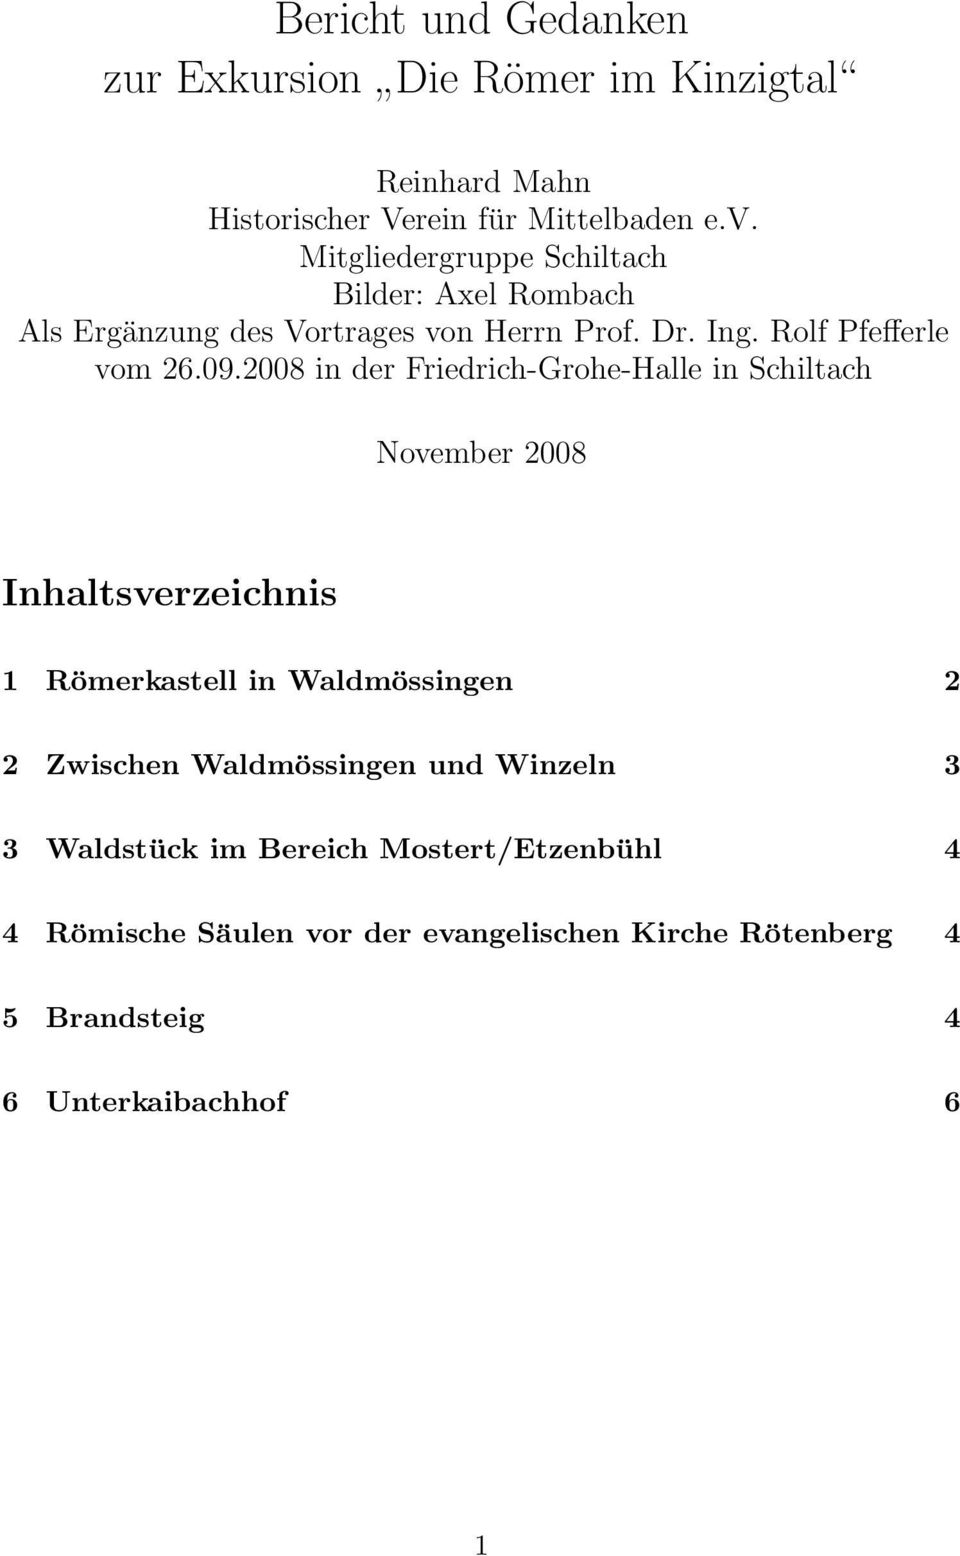 2008 in der Friedrich-Grohe-Halle in Schiltach November 2008 Inhaltsverzeichnis 1 Römerkastell in Waldmössingen 2 2 Zwischen